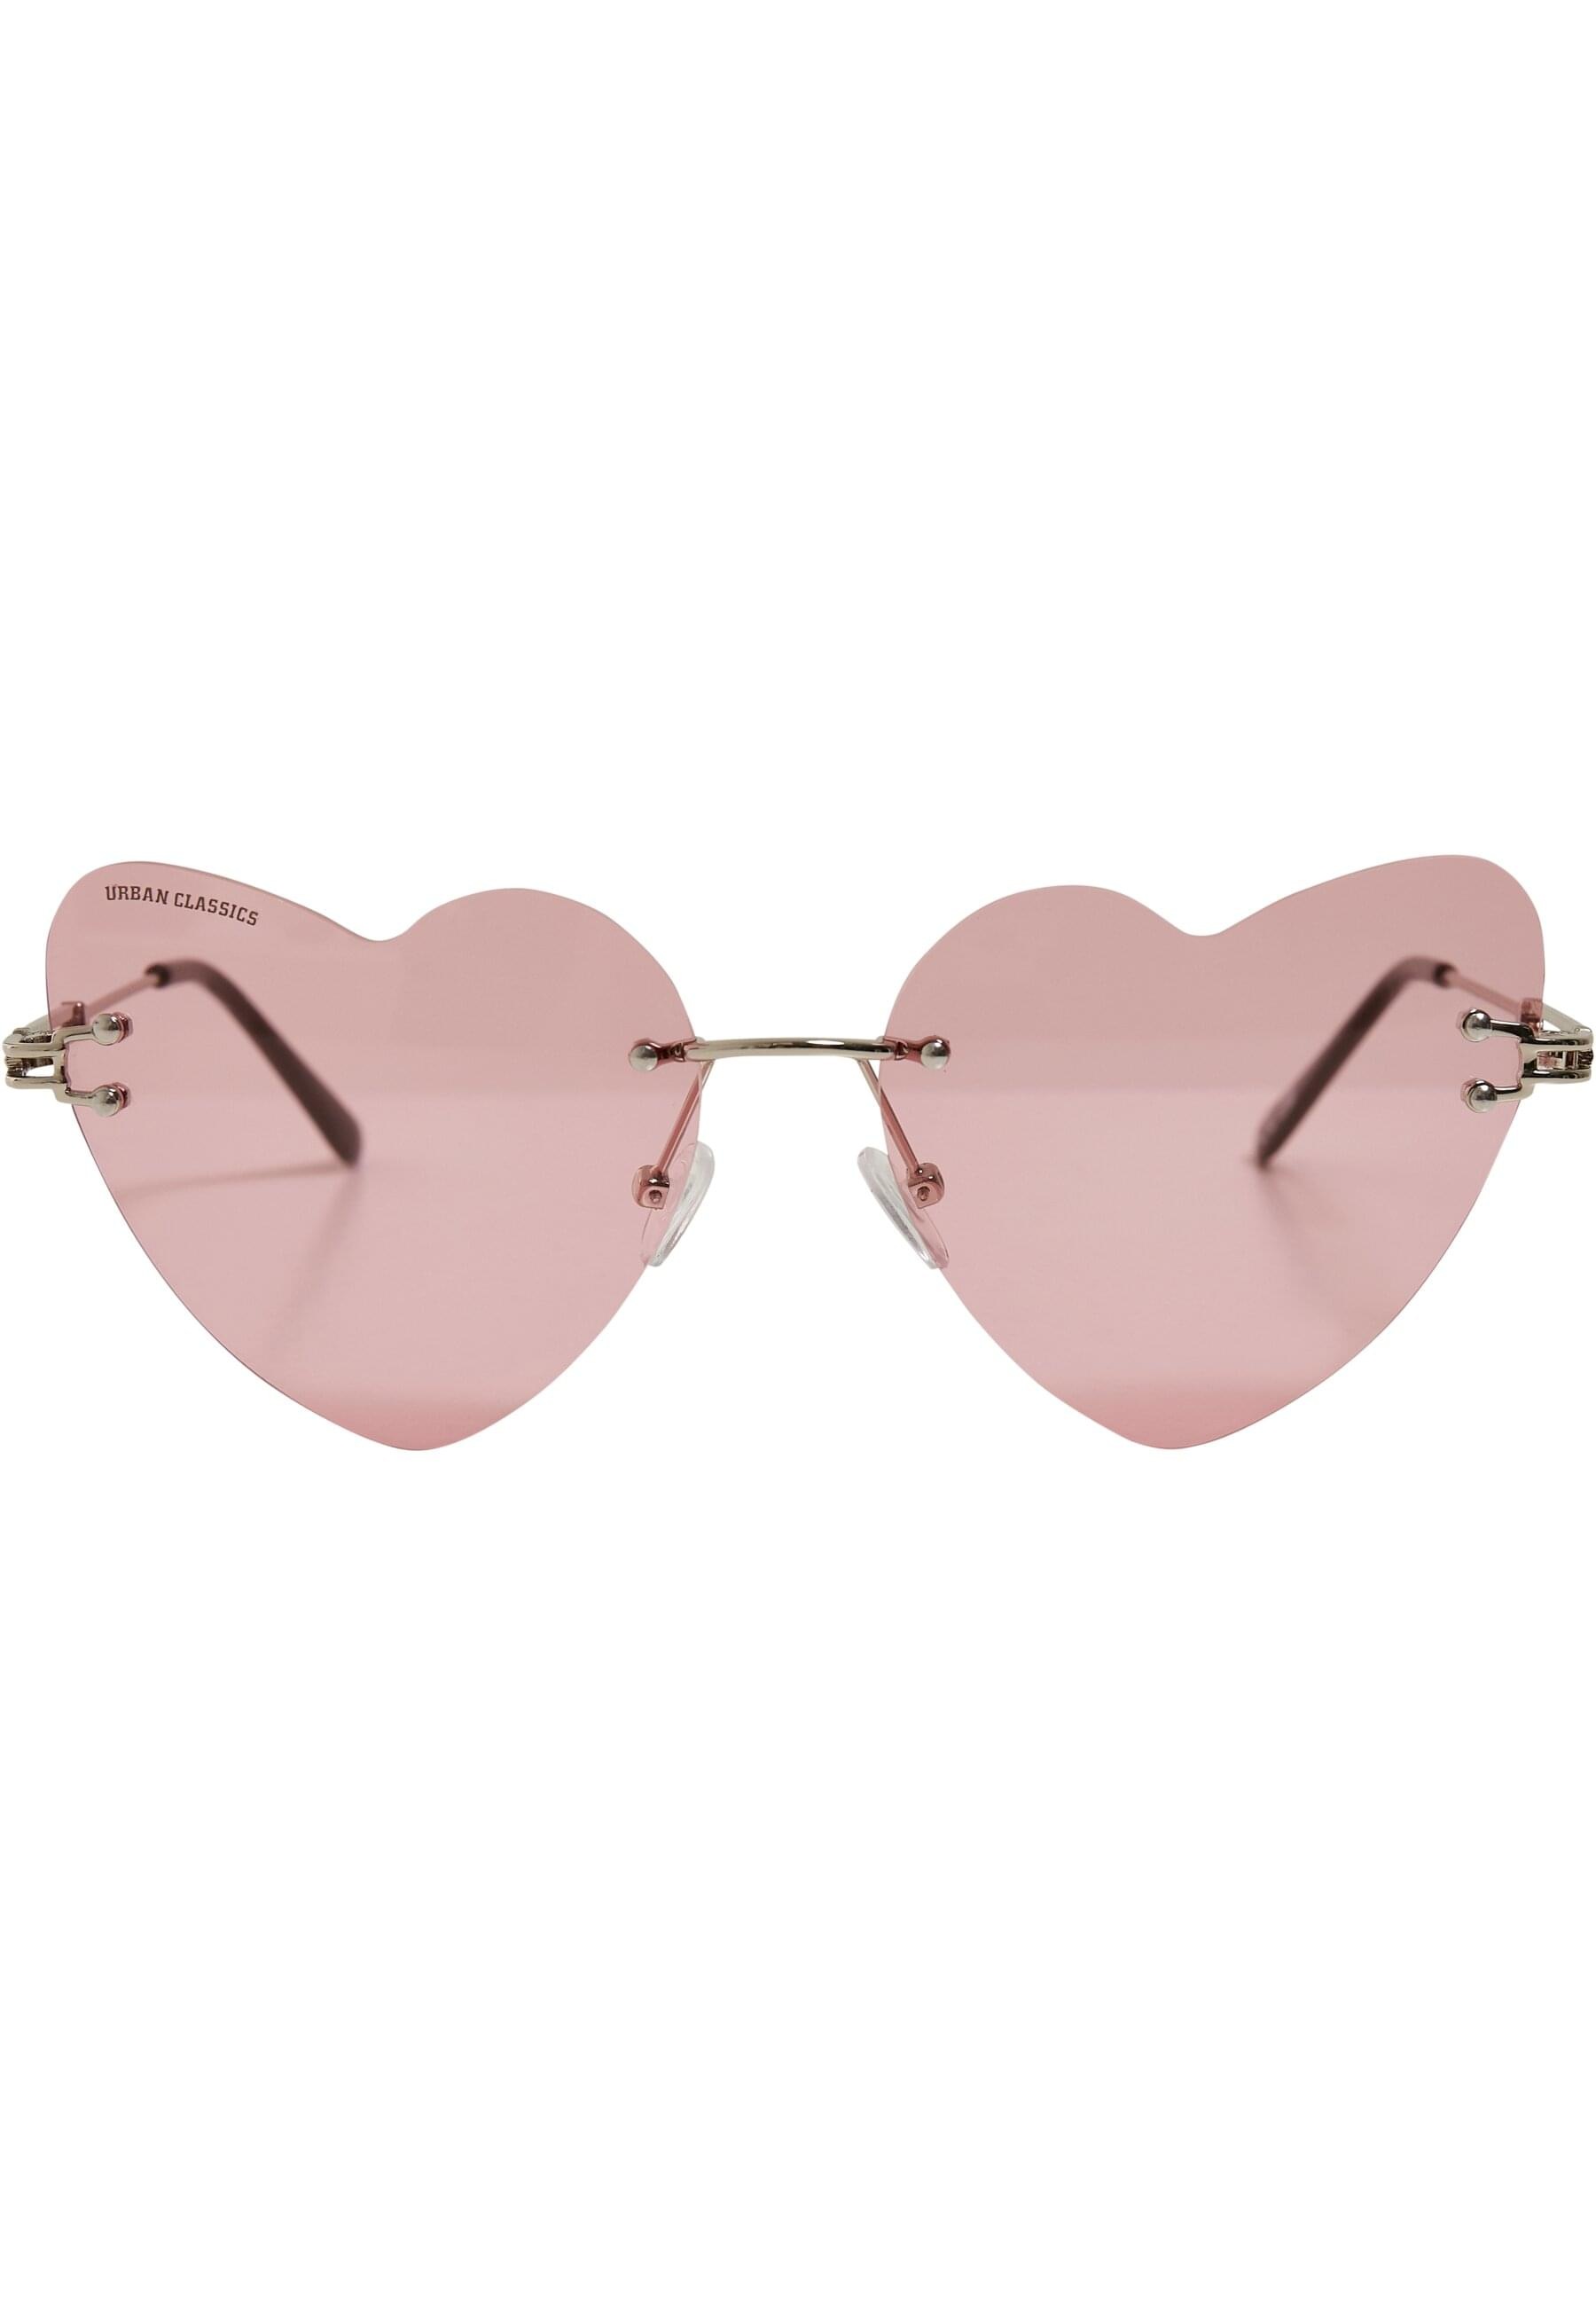 URBAN CLASSICS Sonnenbrille kaufen | »Unisex BAUR Heart Sunglasses Chain« With online